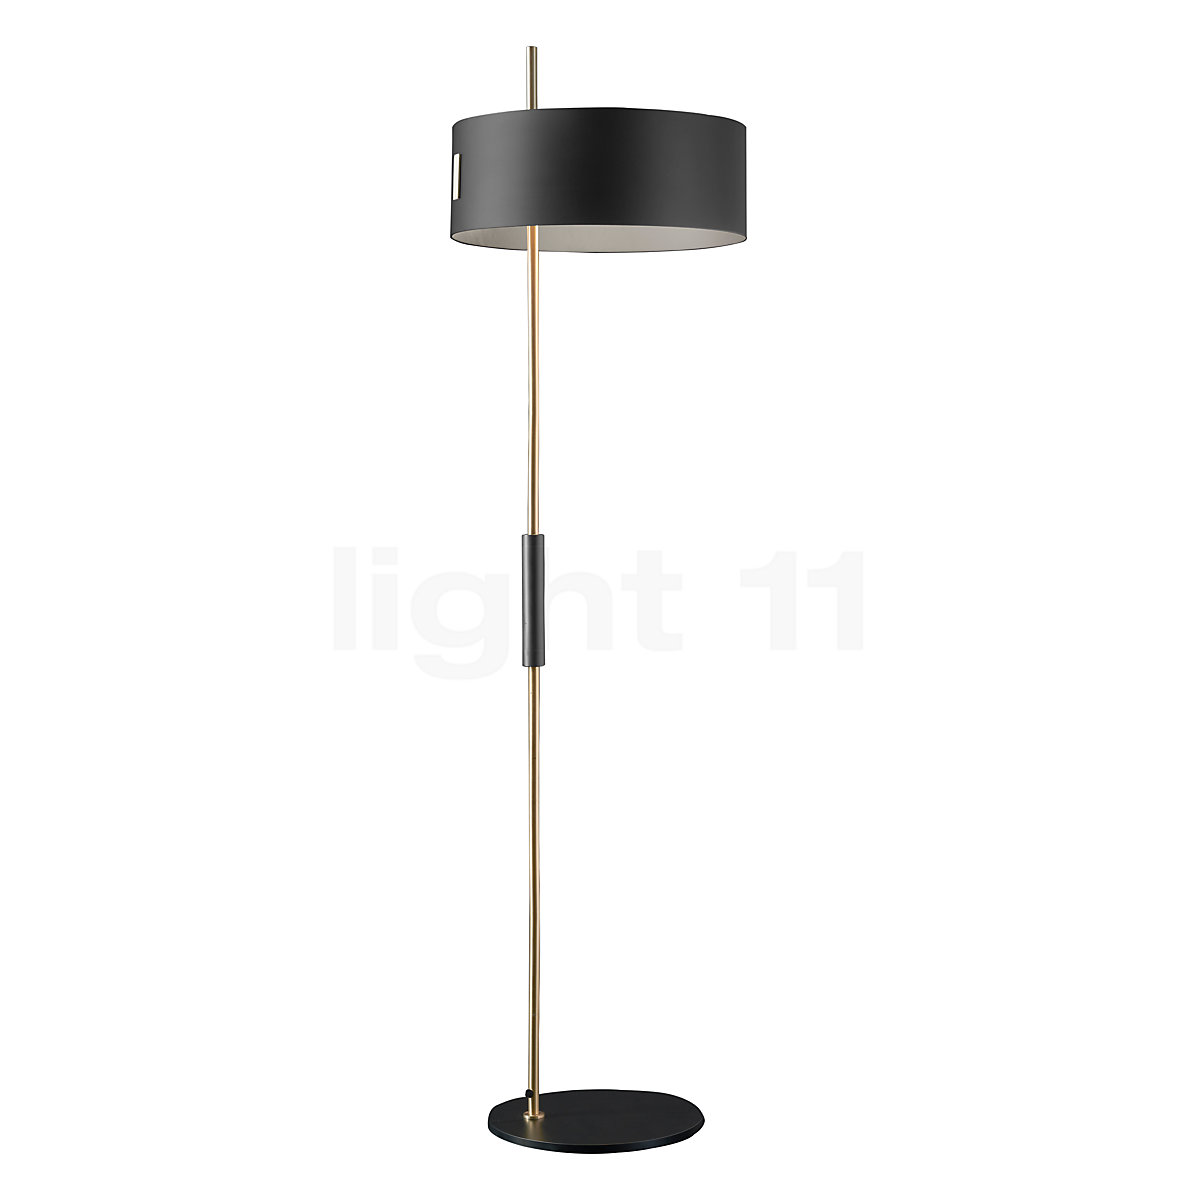 Oluce 1953 Floor Lamp At Light11 Eu, White And Gold Floor Lamp